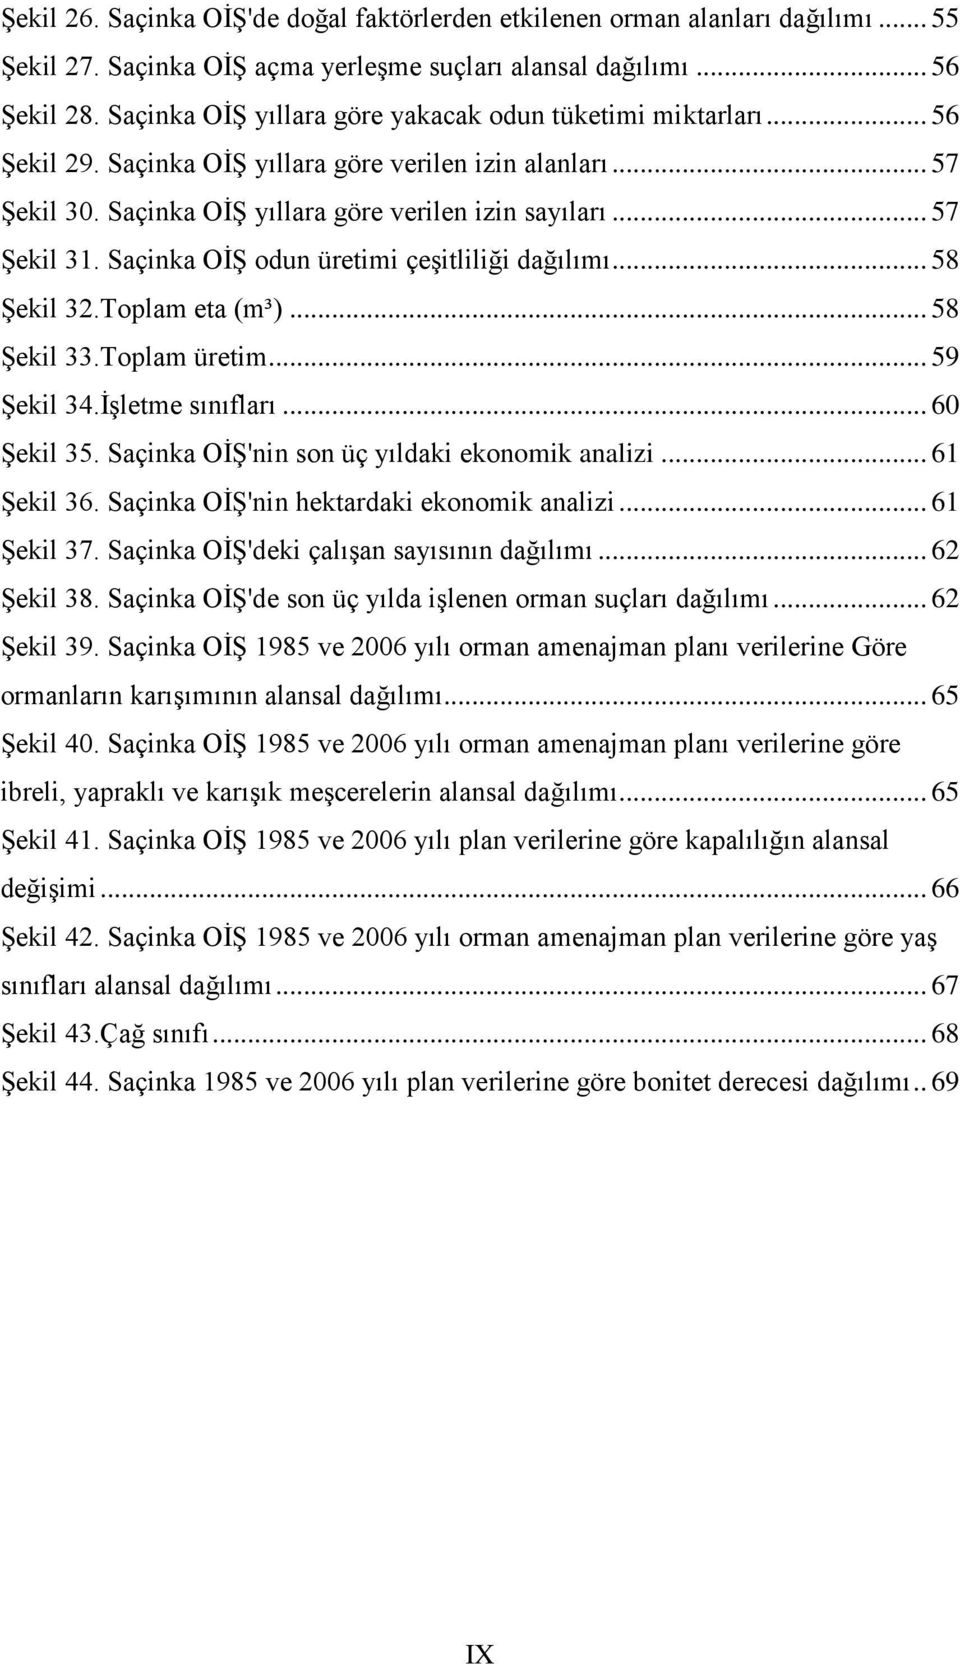 Saçinka OİŞ odun üretimi çeşitliliği dağılımı... 58 Şekil 32.Toplam eta (m³)... 58 Şekil 33.Toplam üretim... 59 Şekil 34.İşletme sınıfları... 60 Şekil 35.